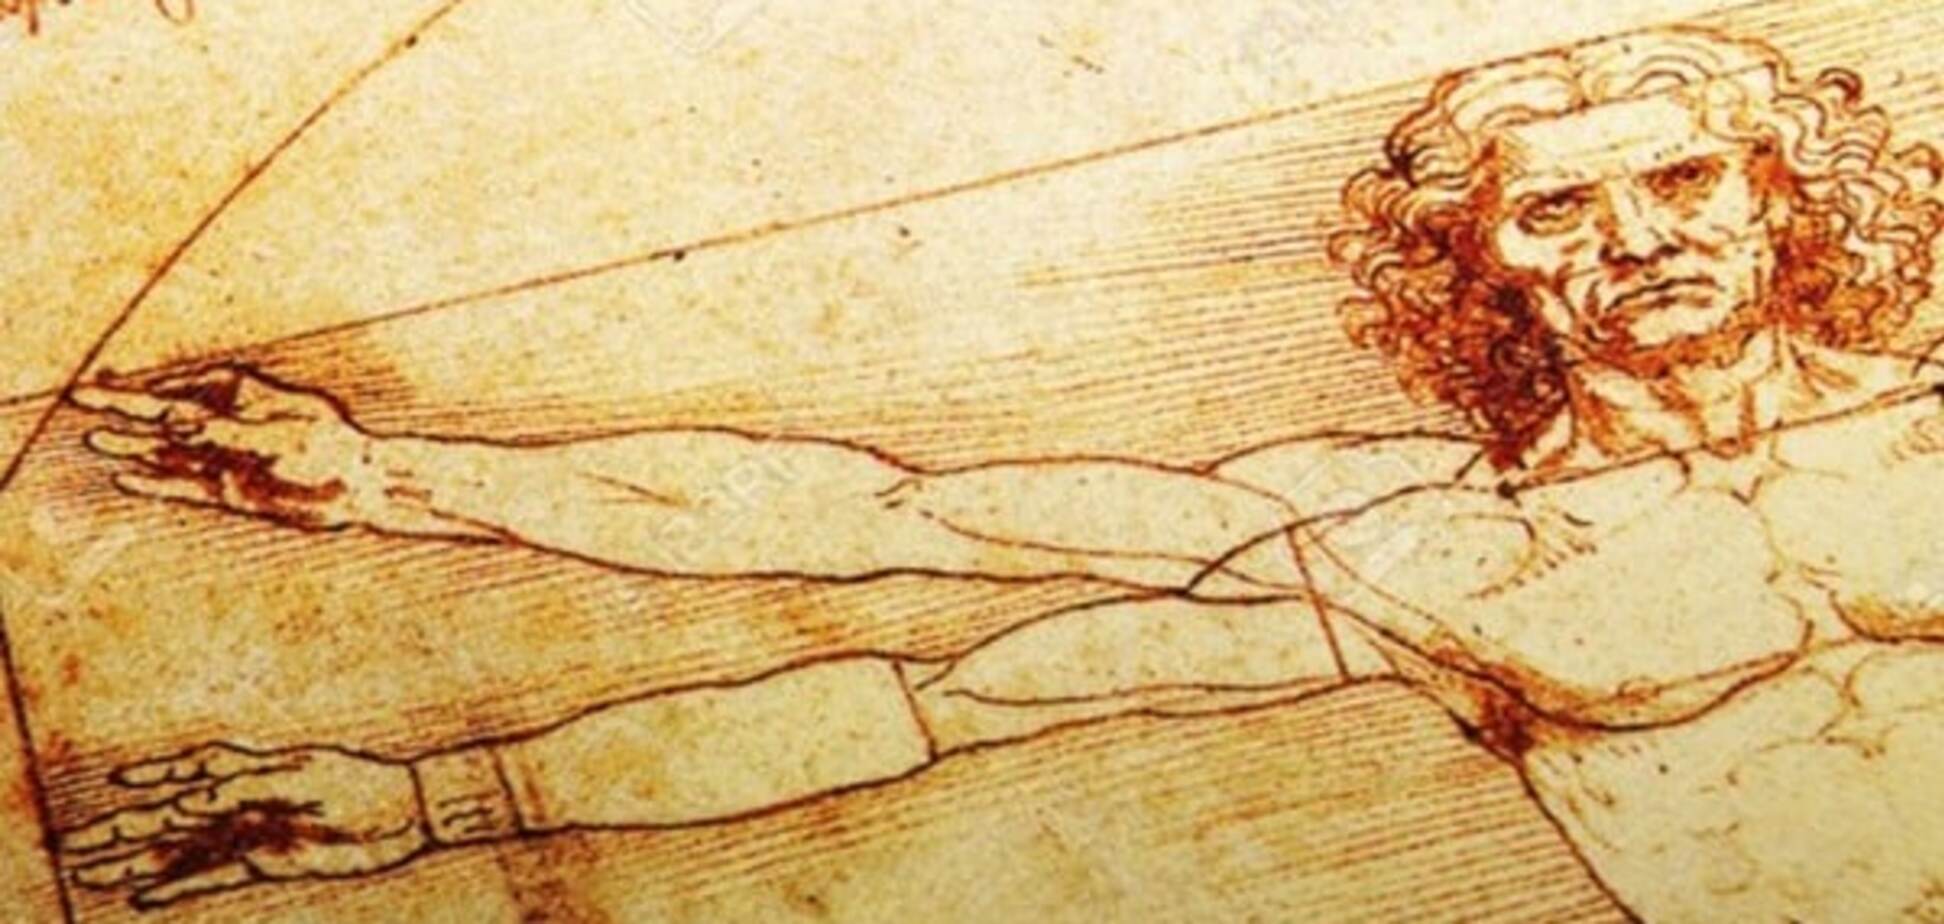 Ученые раскрыли секрет гениальности Леонардо Да Винчи